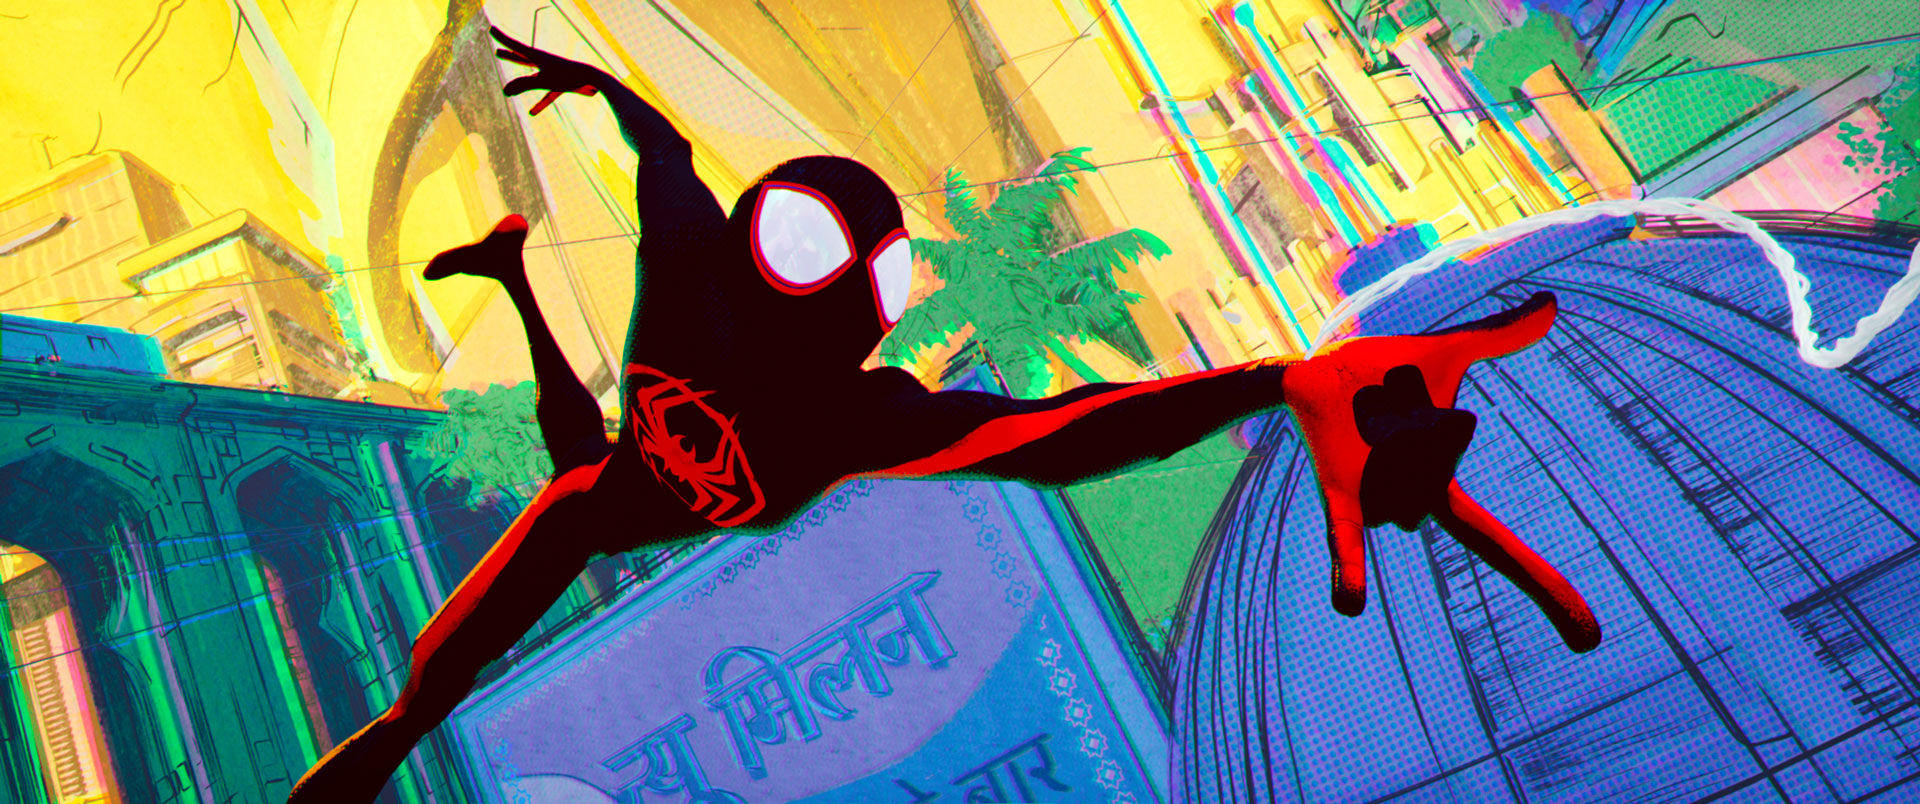 Aventure totalement dingue, un graphisme exceptionnel, humour, Spiders par centaines, et superhéros toujours aussi attachants, le film d'animation, «Spider-Man : Across the Spider-Verse» signé Joaquim Dos Santos, Kemp Powers et Justin Thompson, ne devrait pas décevoir les fans. Sony Pictures Animation